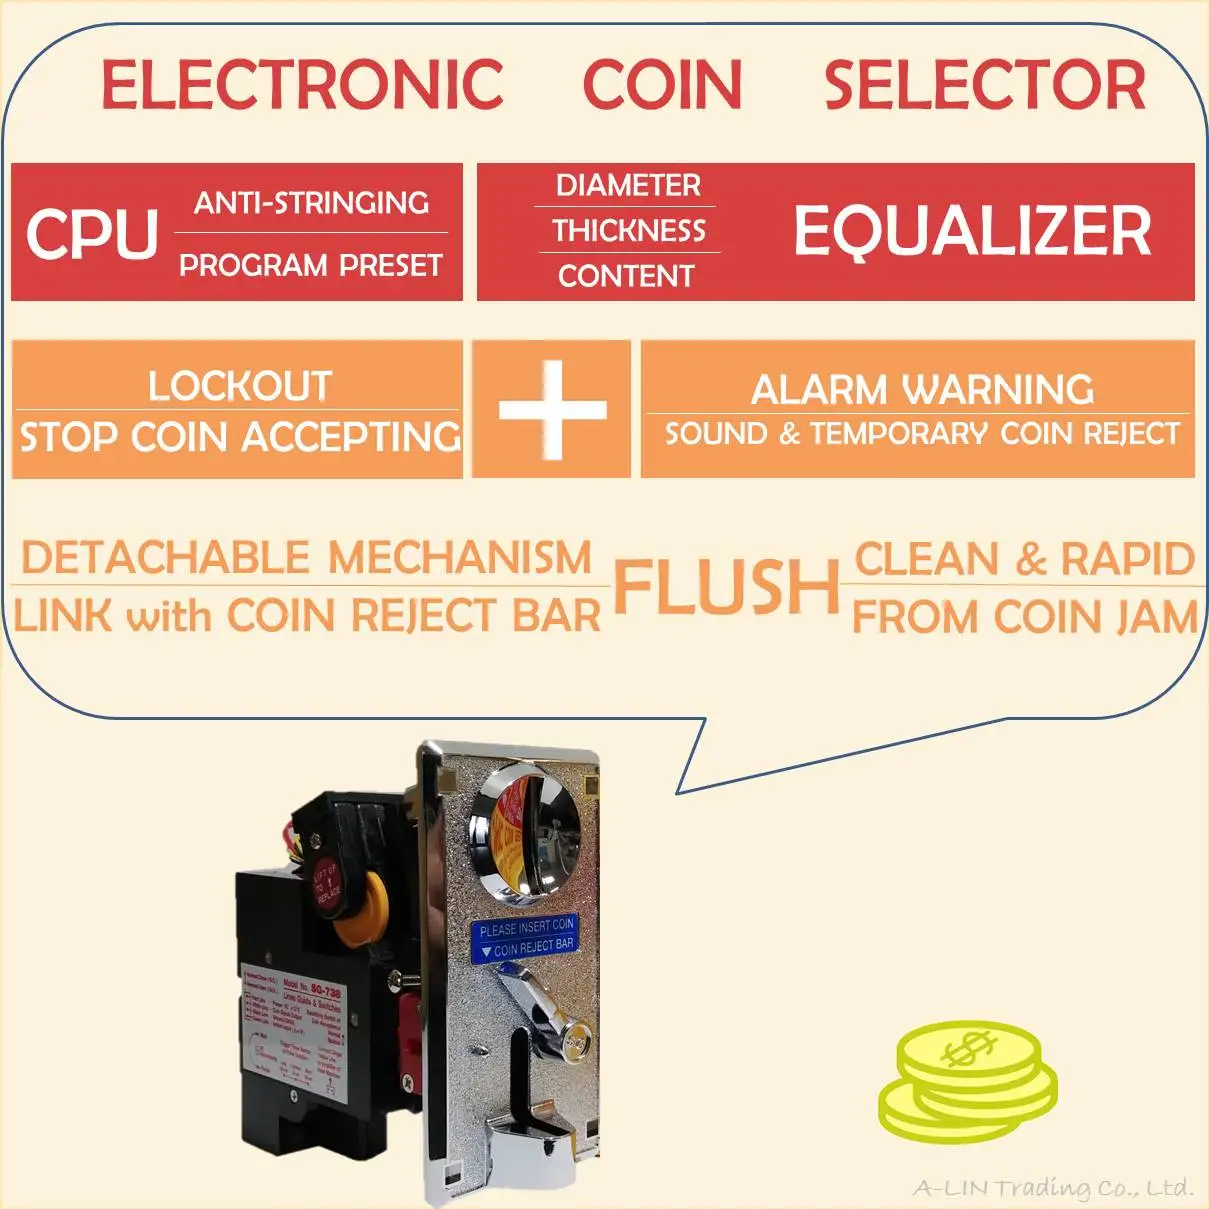 CPU SG-738 Electronic Coin Selector Coin Acceptor